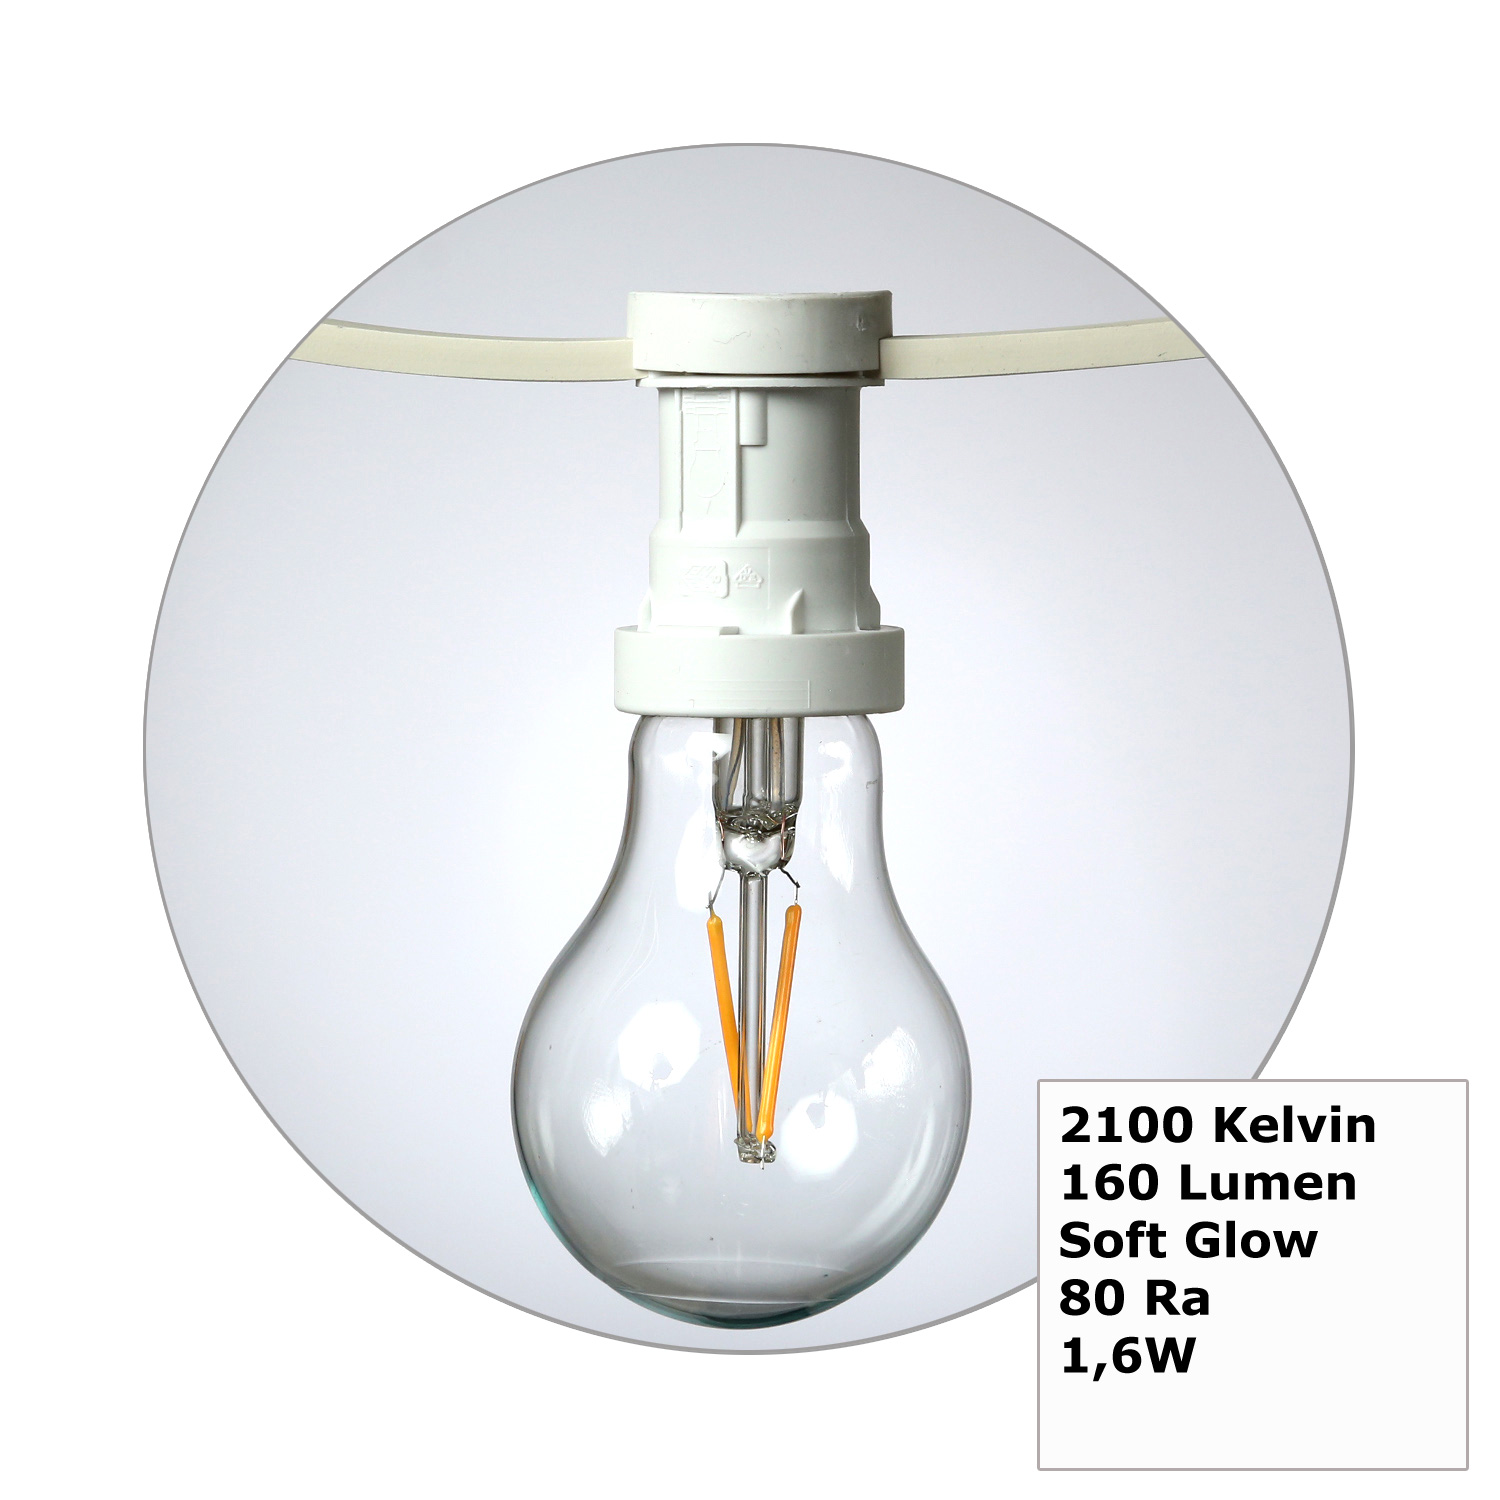 Illu-/Partylichterkette 40m - Außenlichterkette weiß - Made in Germany- 60 Edison LED Filamentlampen